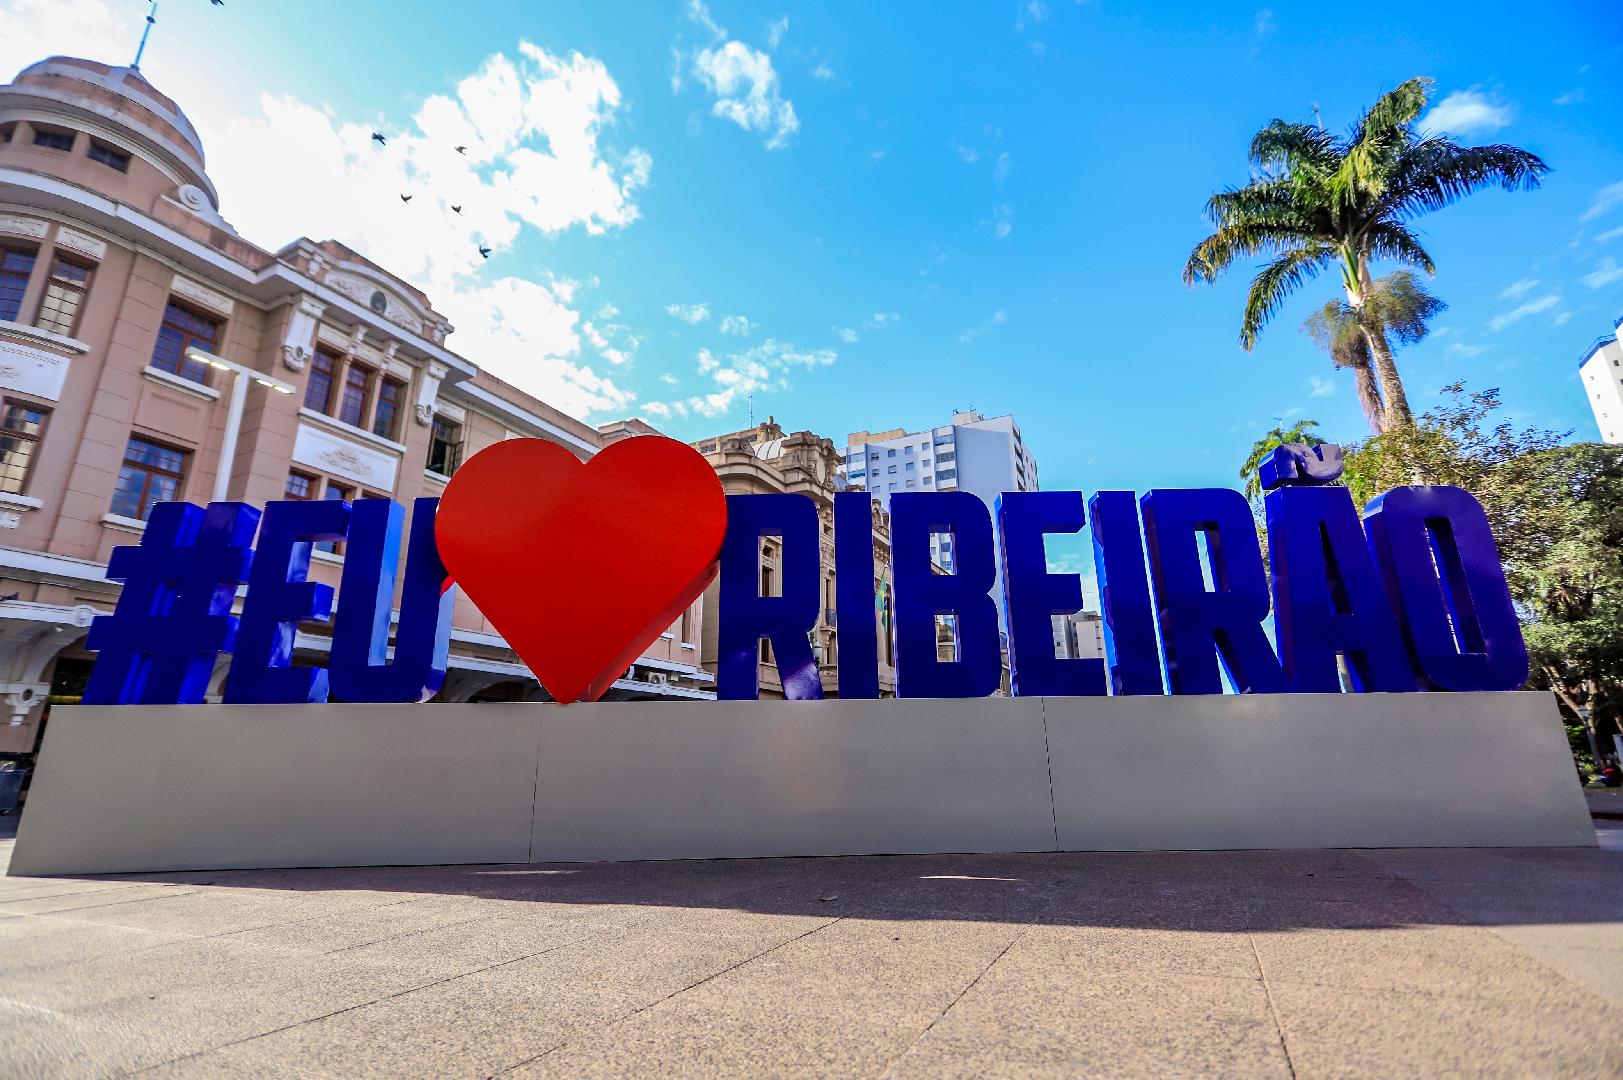 Aniversário de Ribeirão Preto: saiba mais sobre a cidade